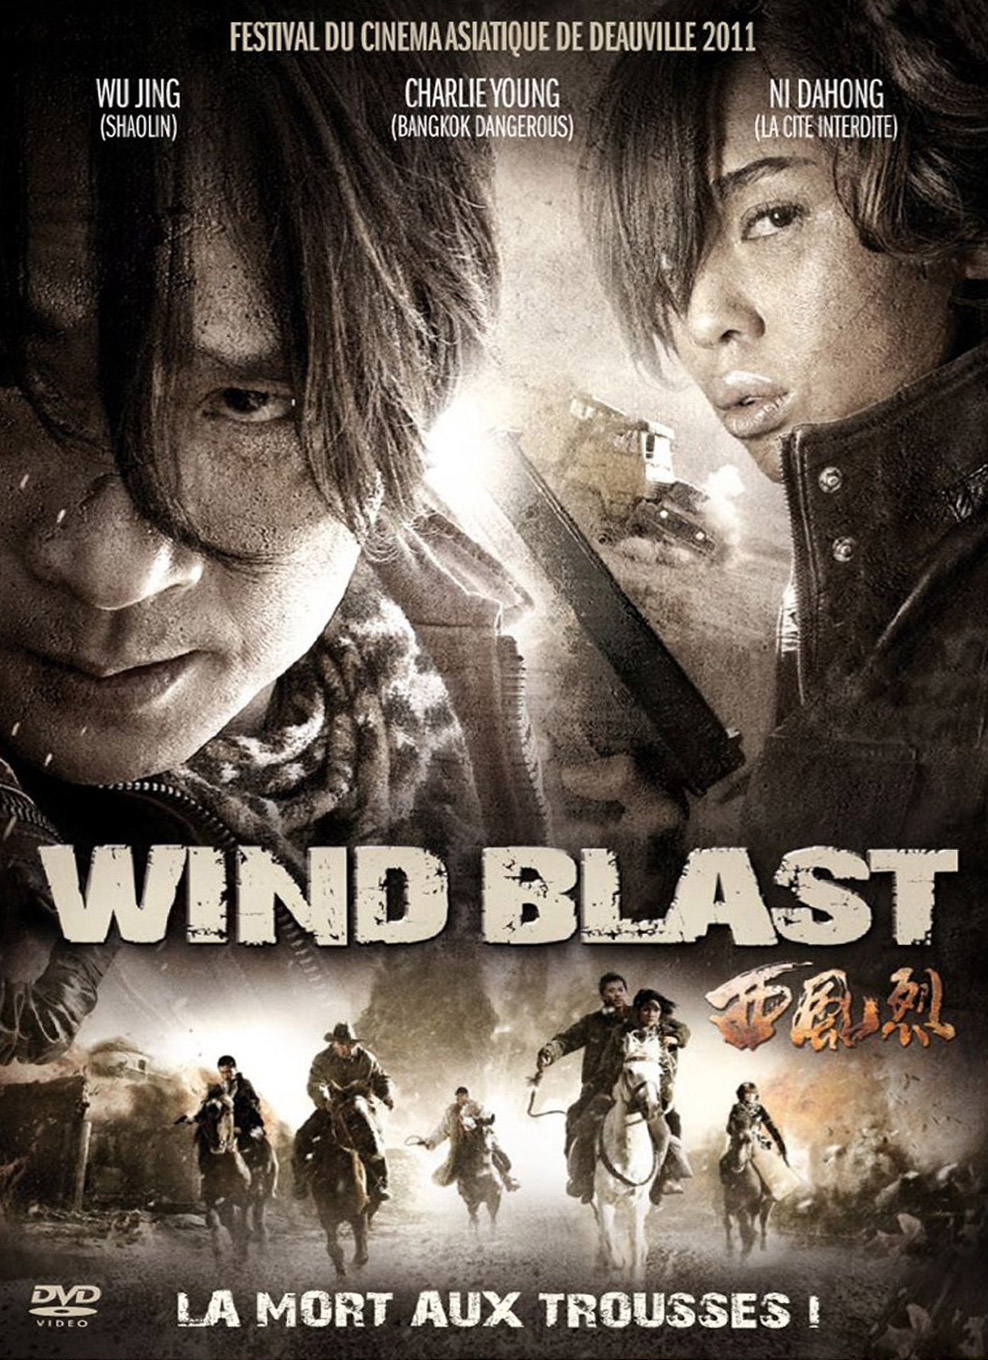 Wind blast